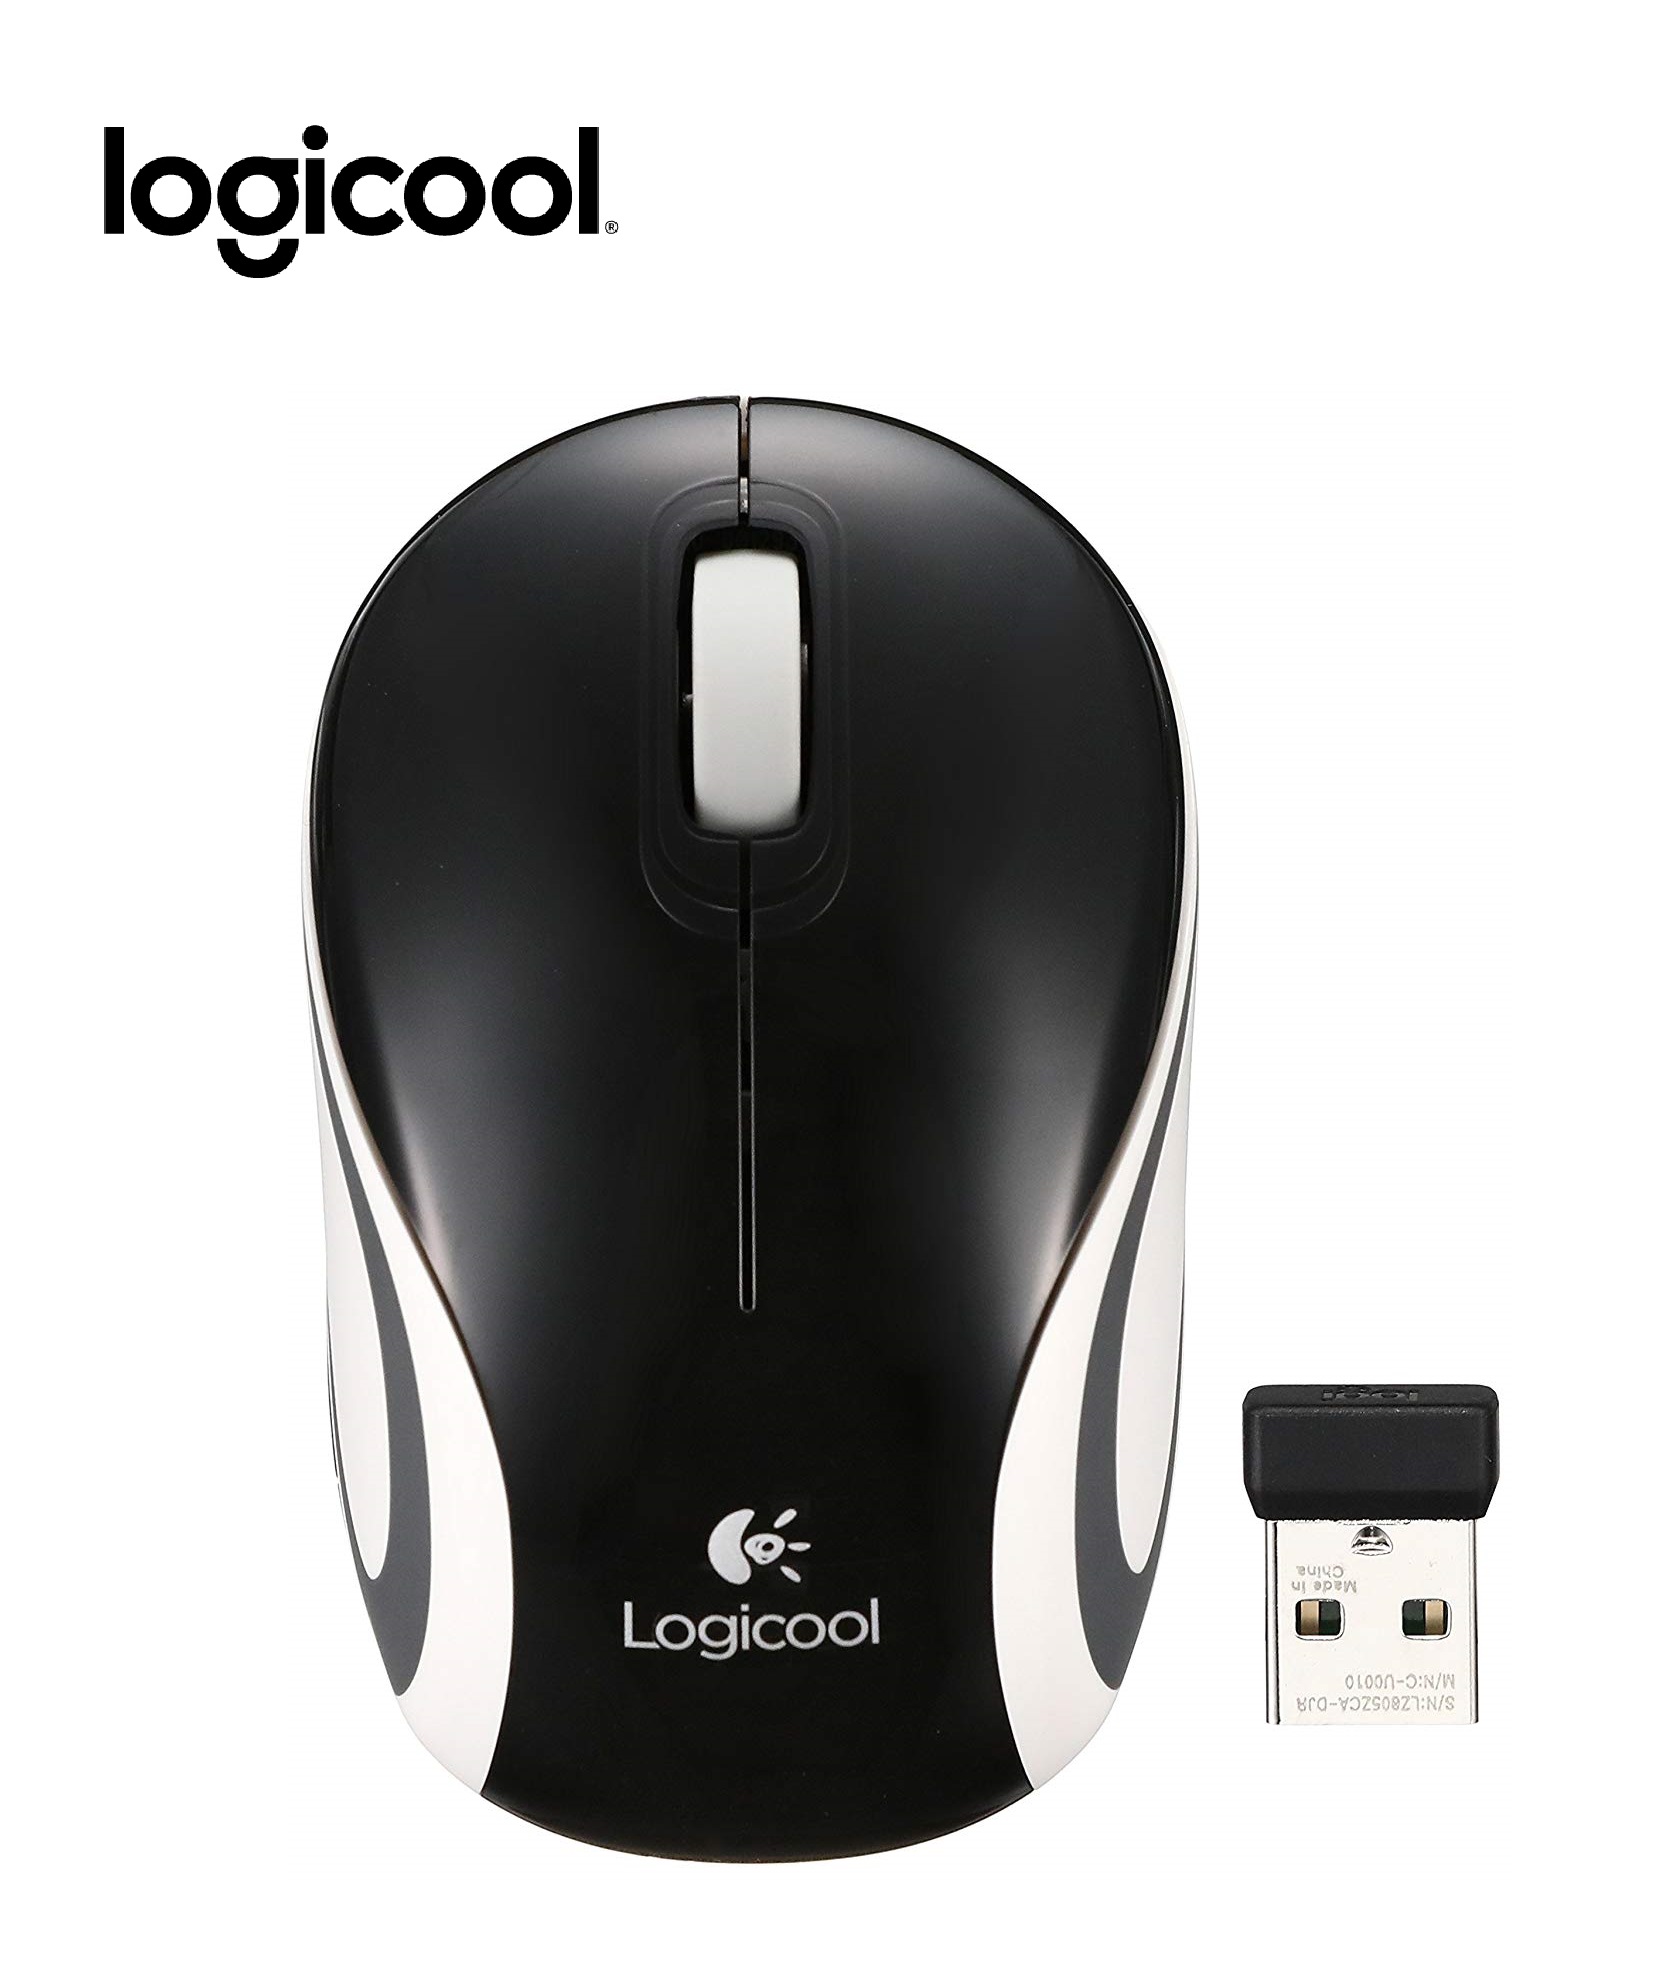 【Logicool】 ロジクール ワイヤレス ミニマウス ブラック |商品詳細【セレプレ】